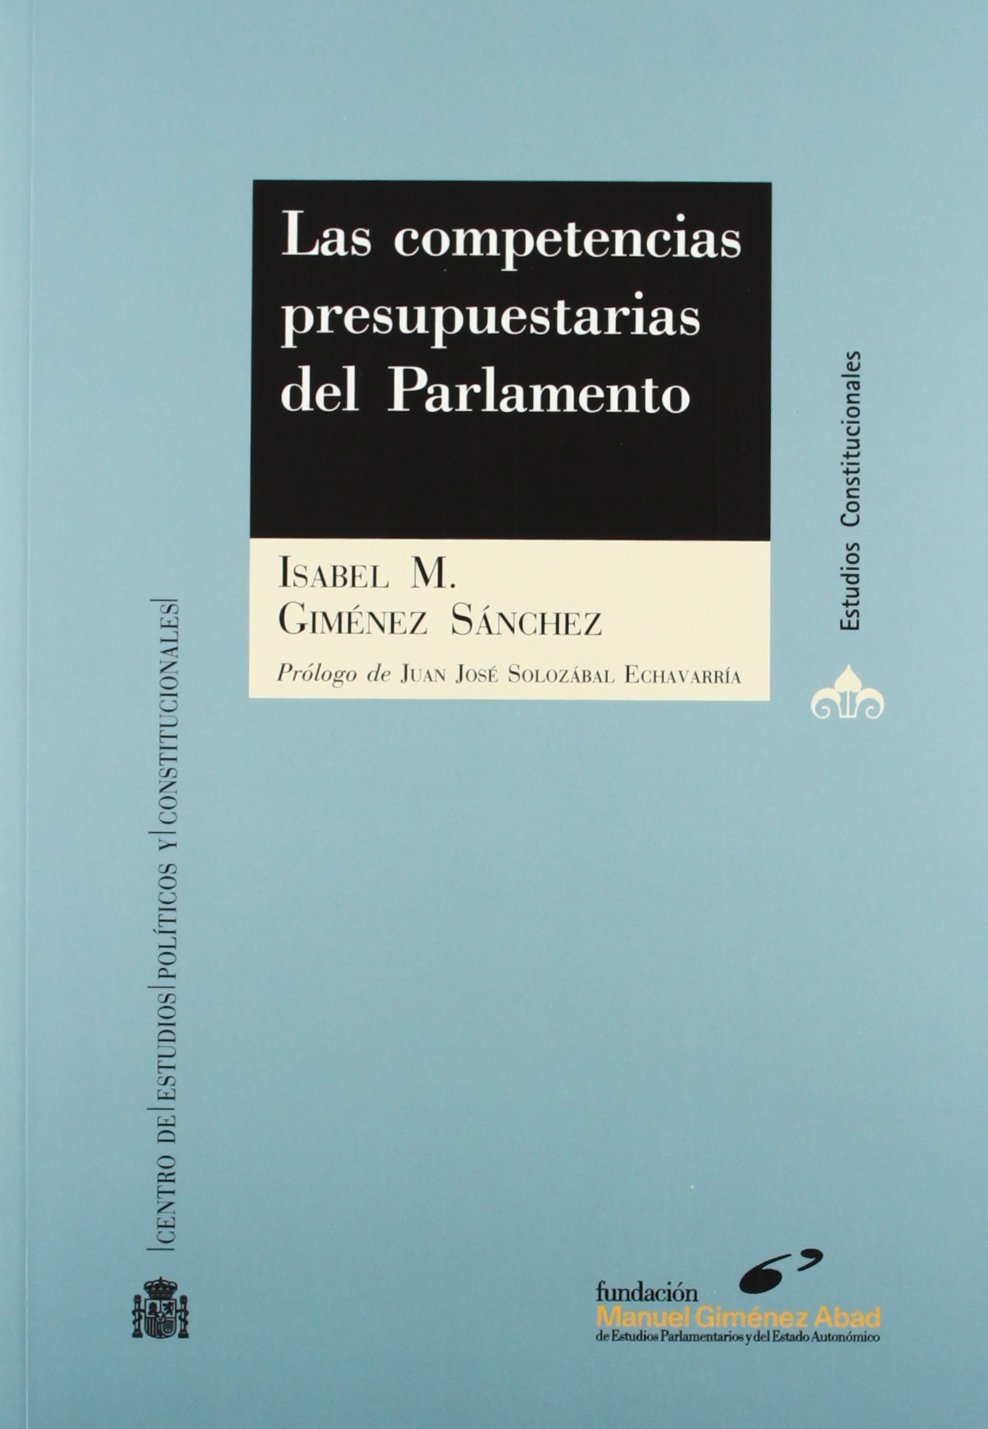 Imagen de portada del libro Las competencias presupuestarias del parlamento